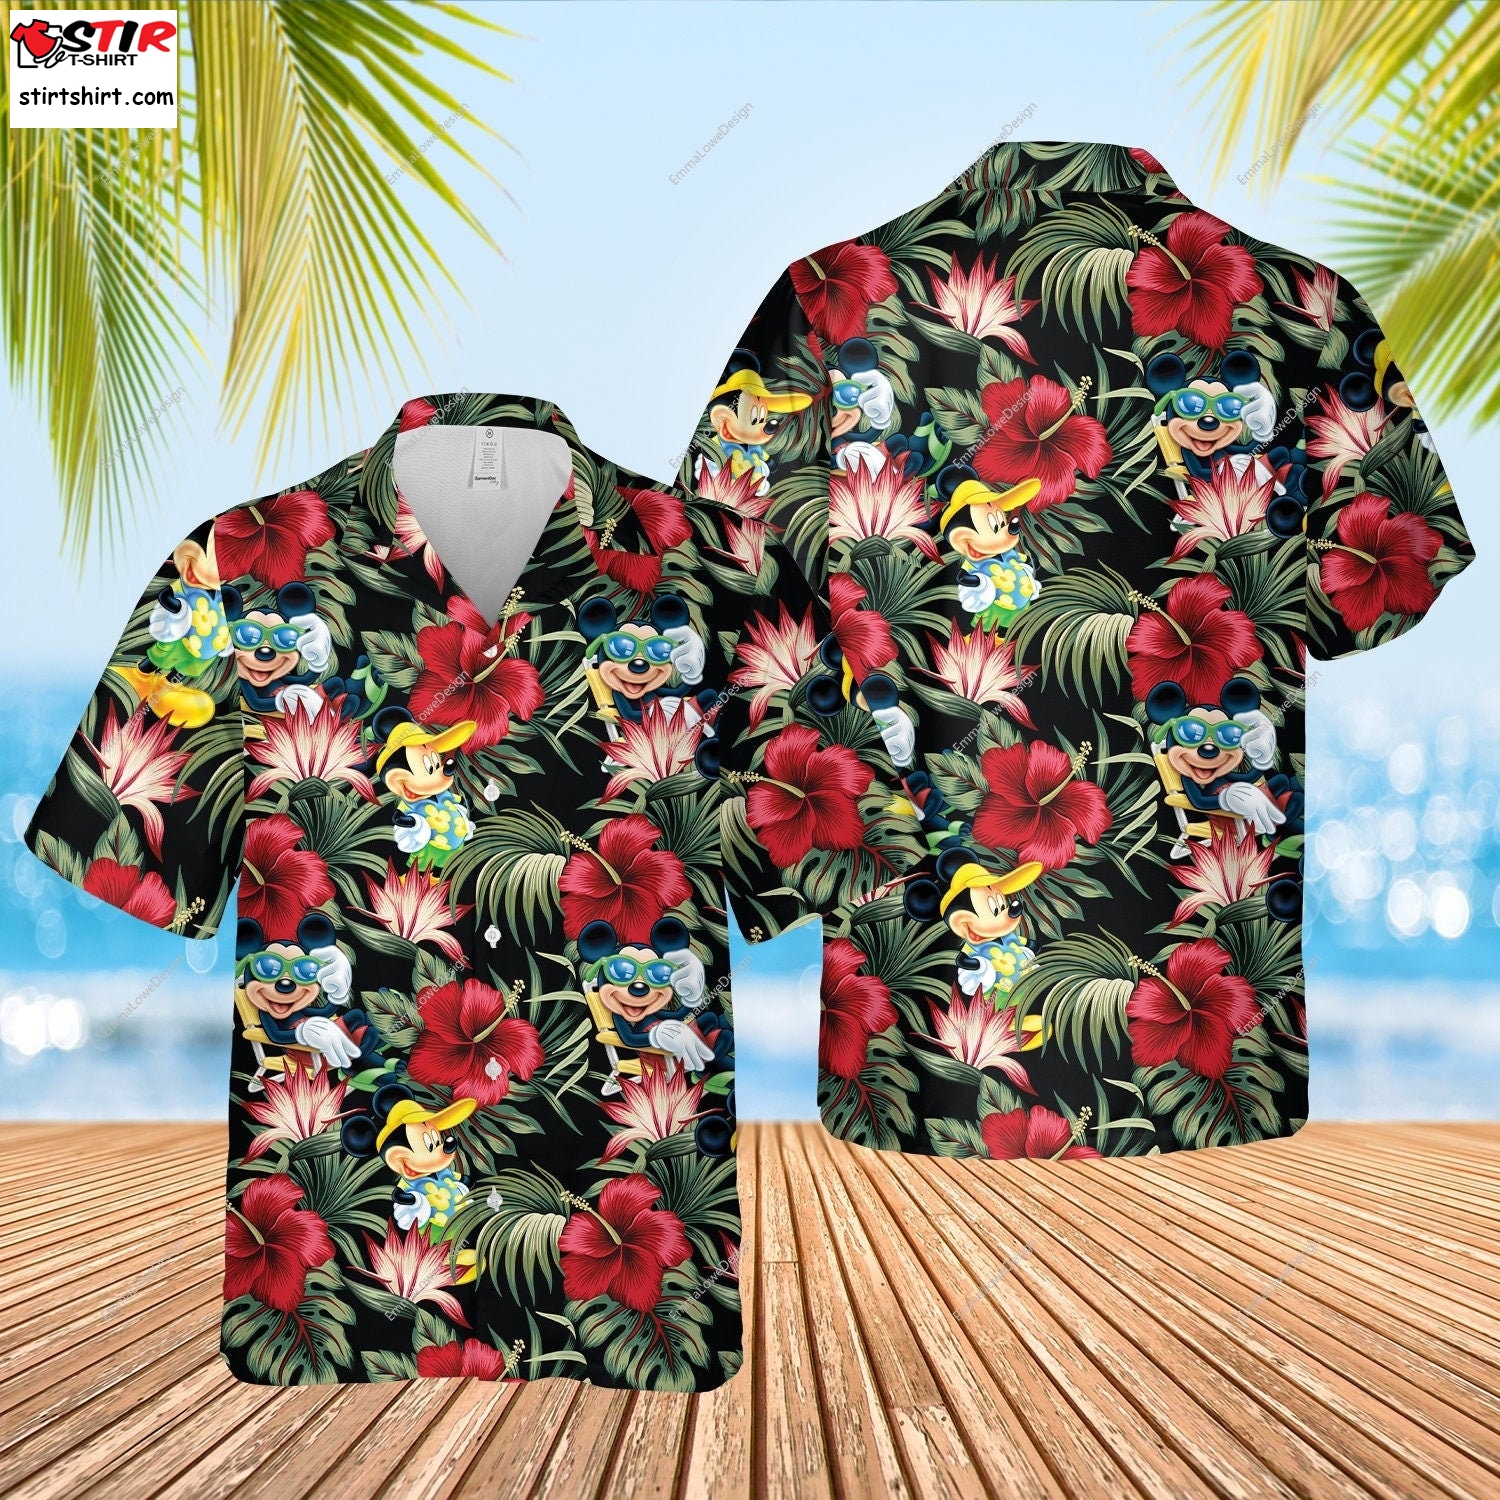 Mickey Mouse Tropical Hawaiian Shirt, Mickey Mouse Hawaiian Shirt, Summer Button Up Shirt, Summer Beach Trip Family Hawaiian